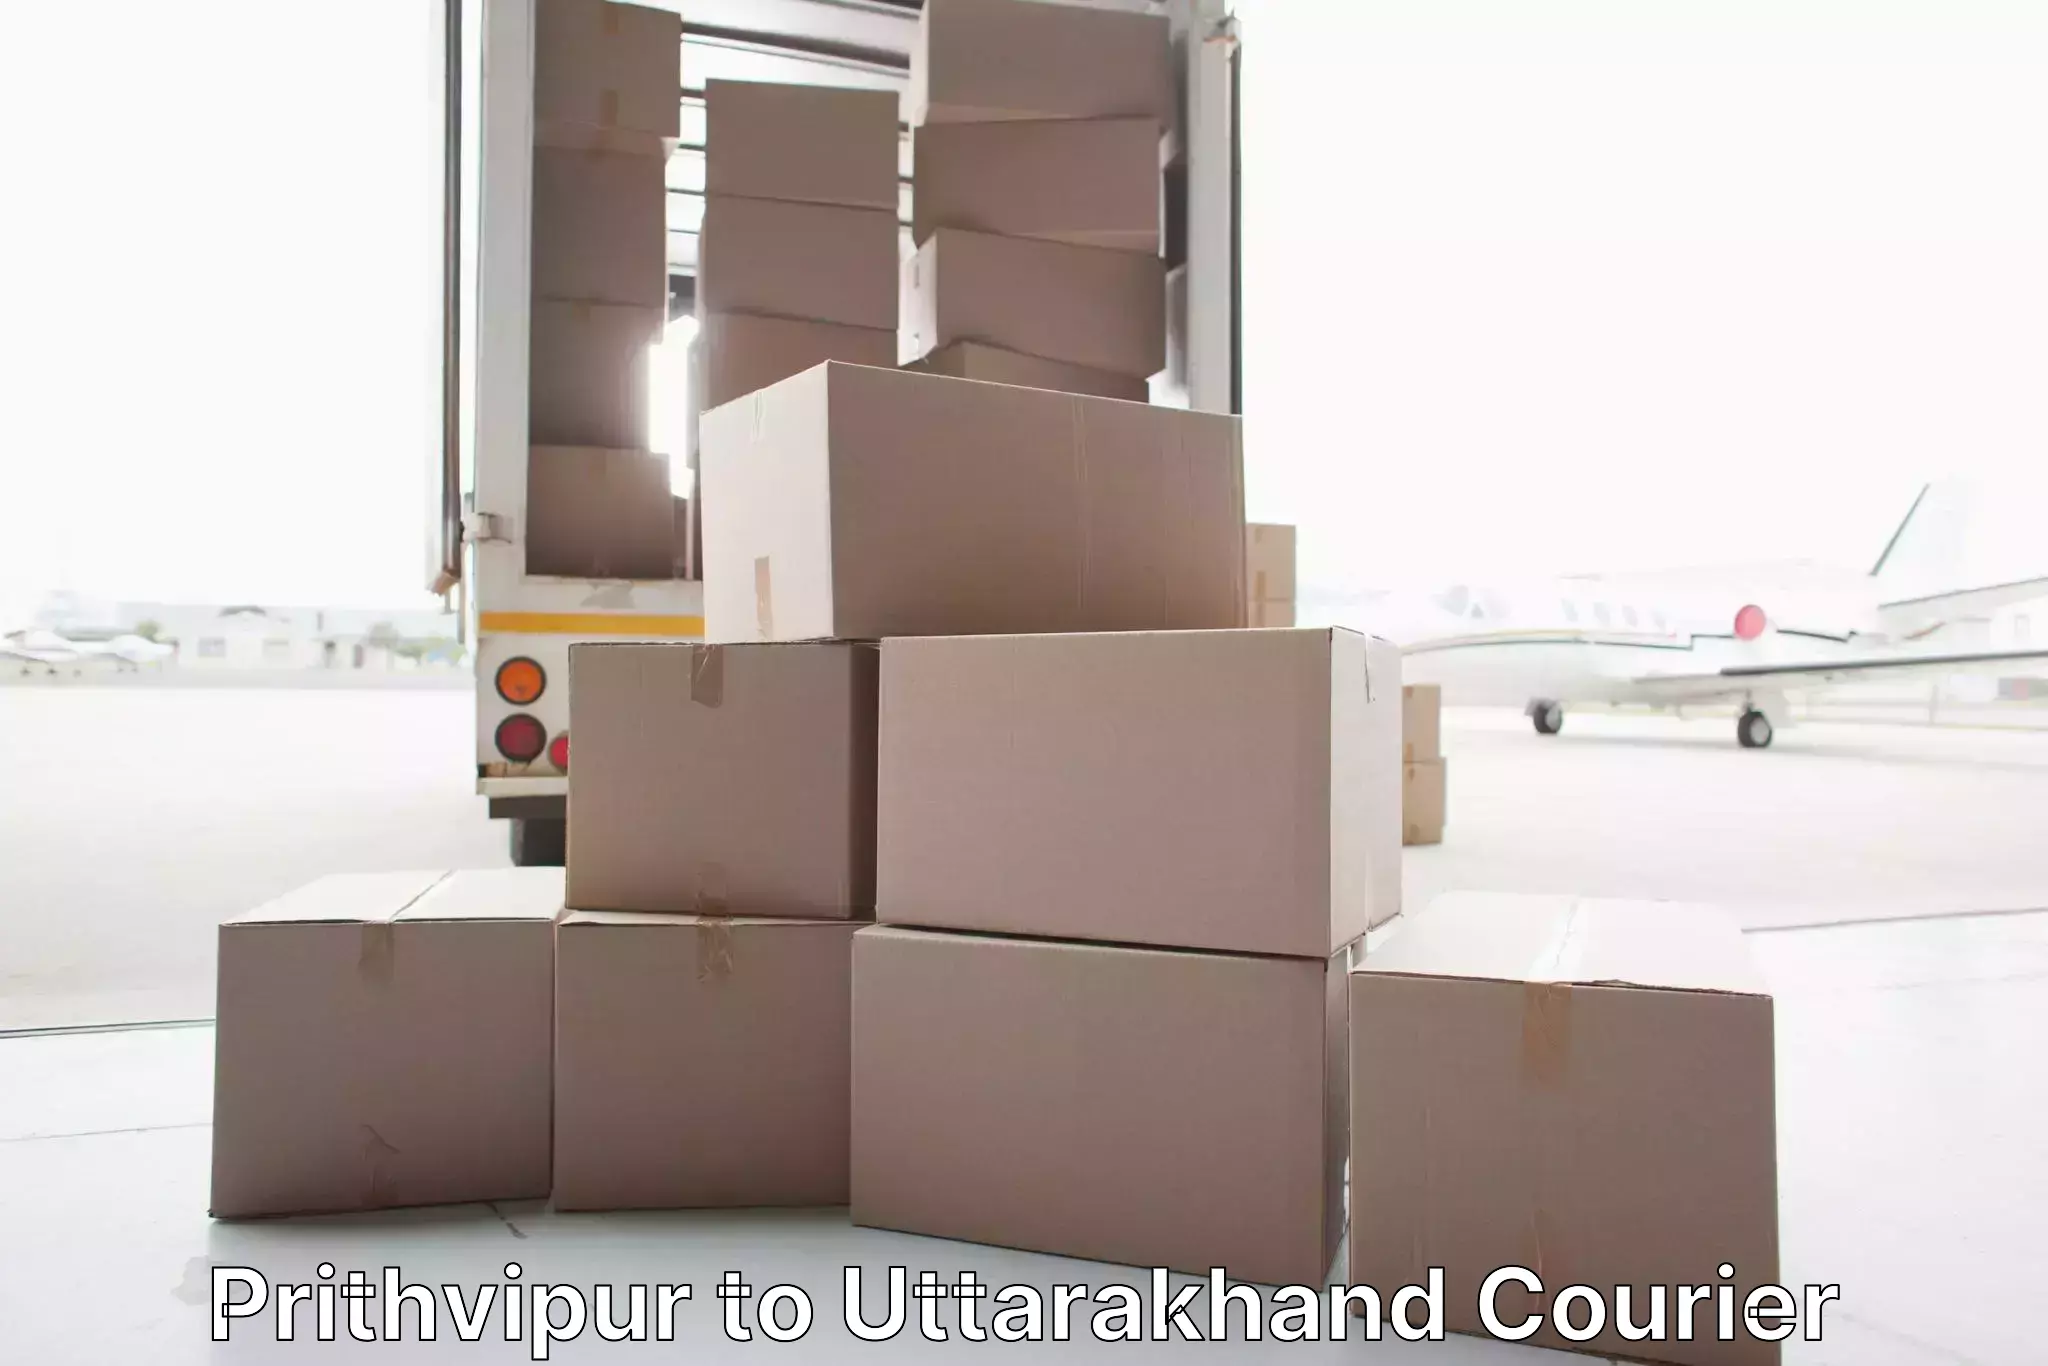 Furniture handling services Prithvipur to Uttarakhand